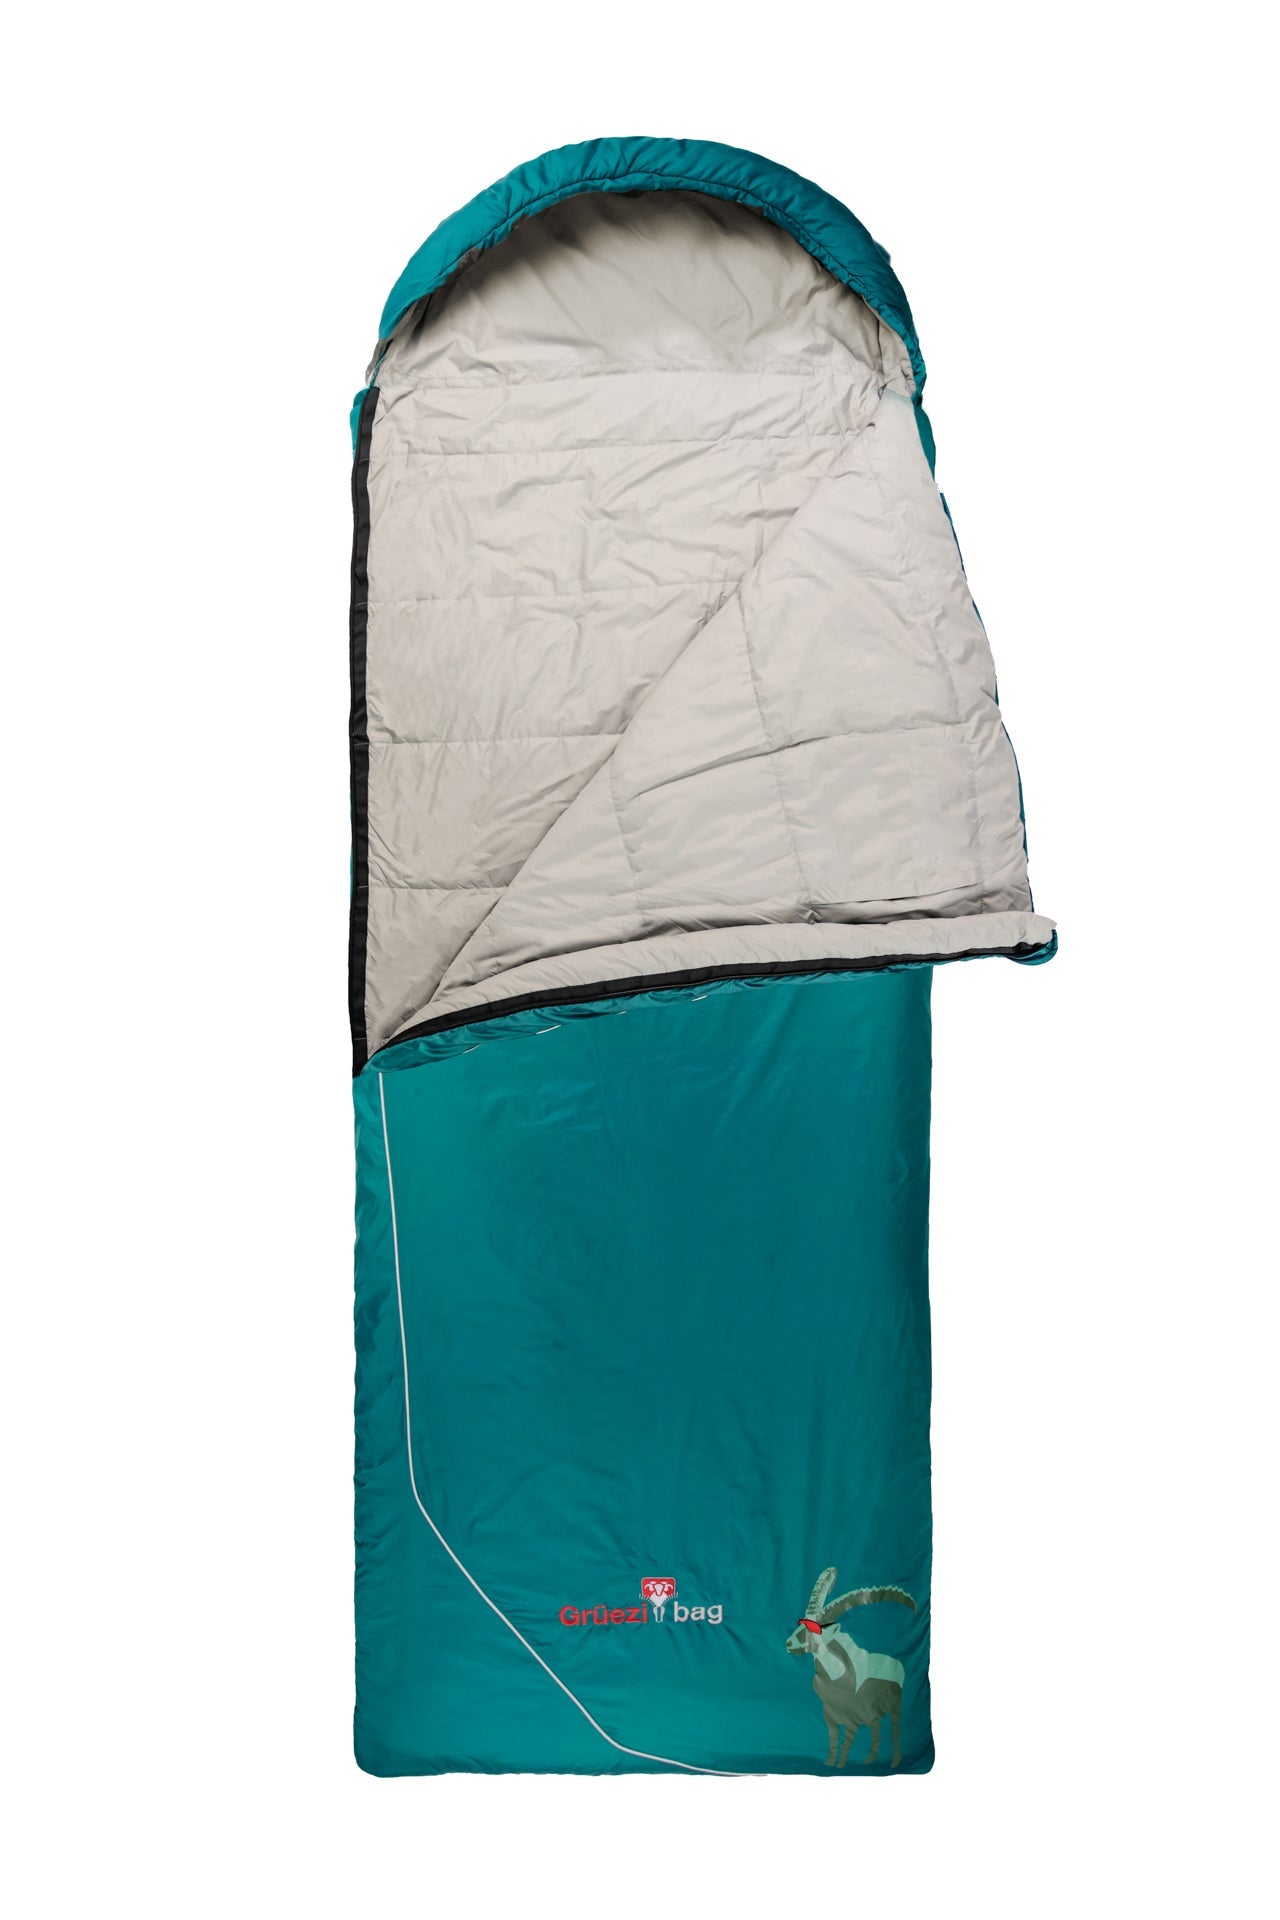 Grüezi bag Deckenschlafsack Biopod Wolle Goas Comfort - aufgeschlagen